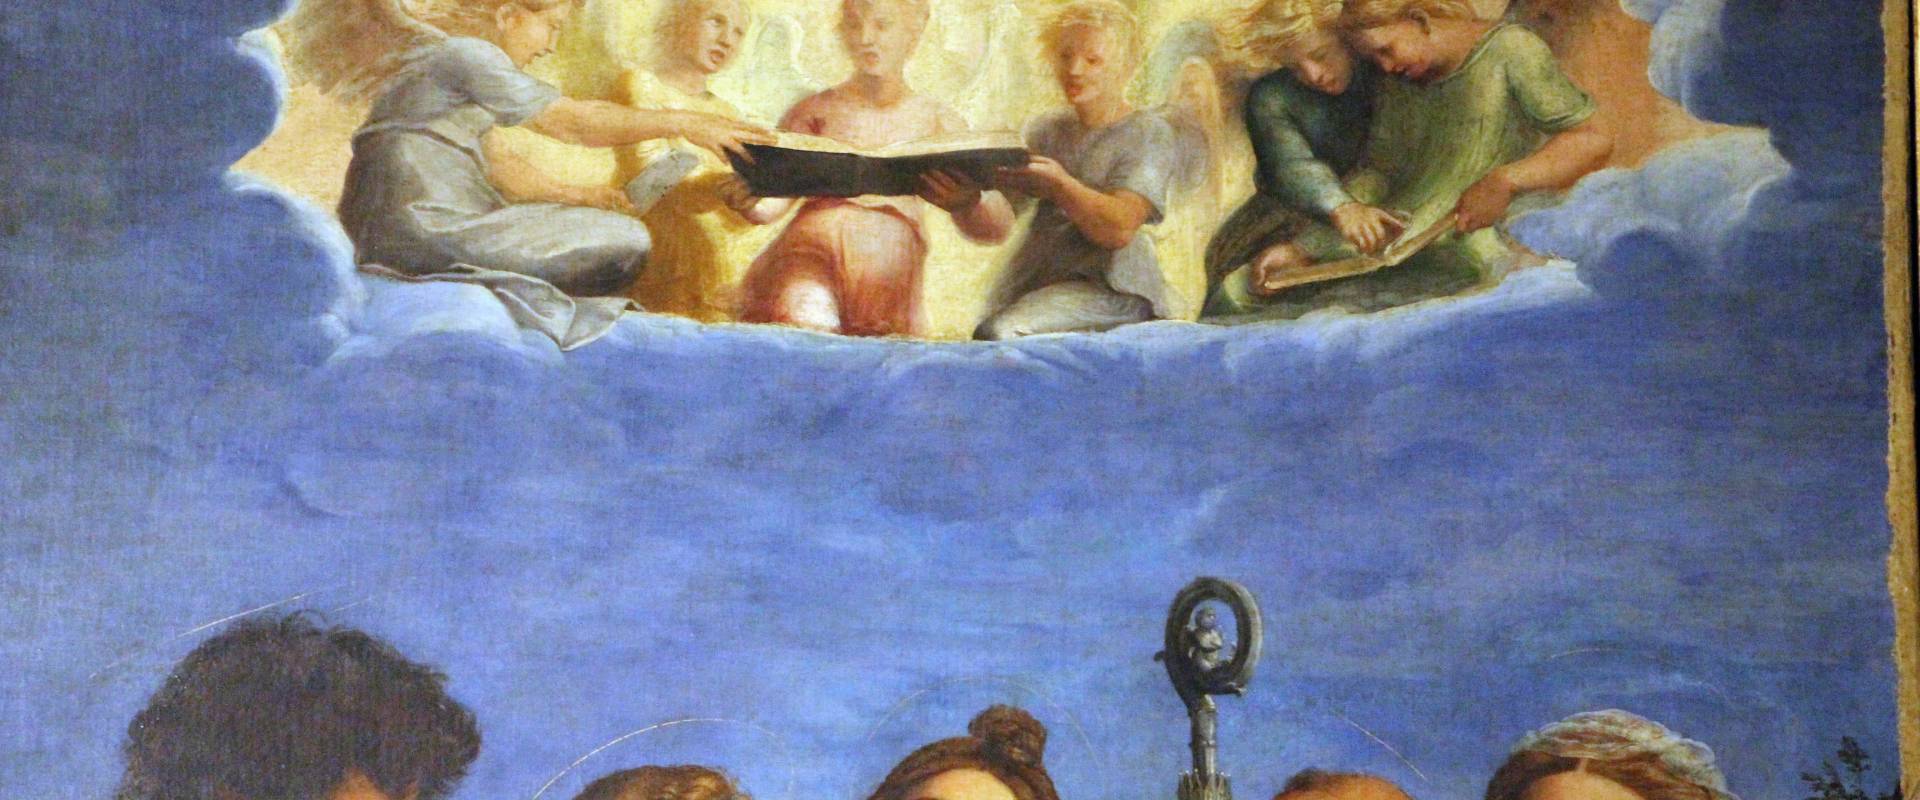 Raffaello e collaboratori, estasi di santa cecilia, 1515 ca. da pinacoteca nazionale 02 foto di Sailko